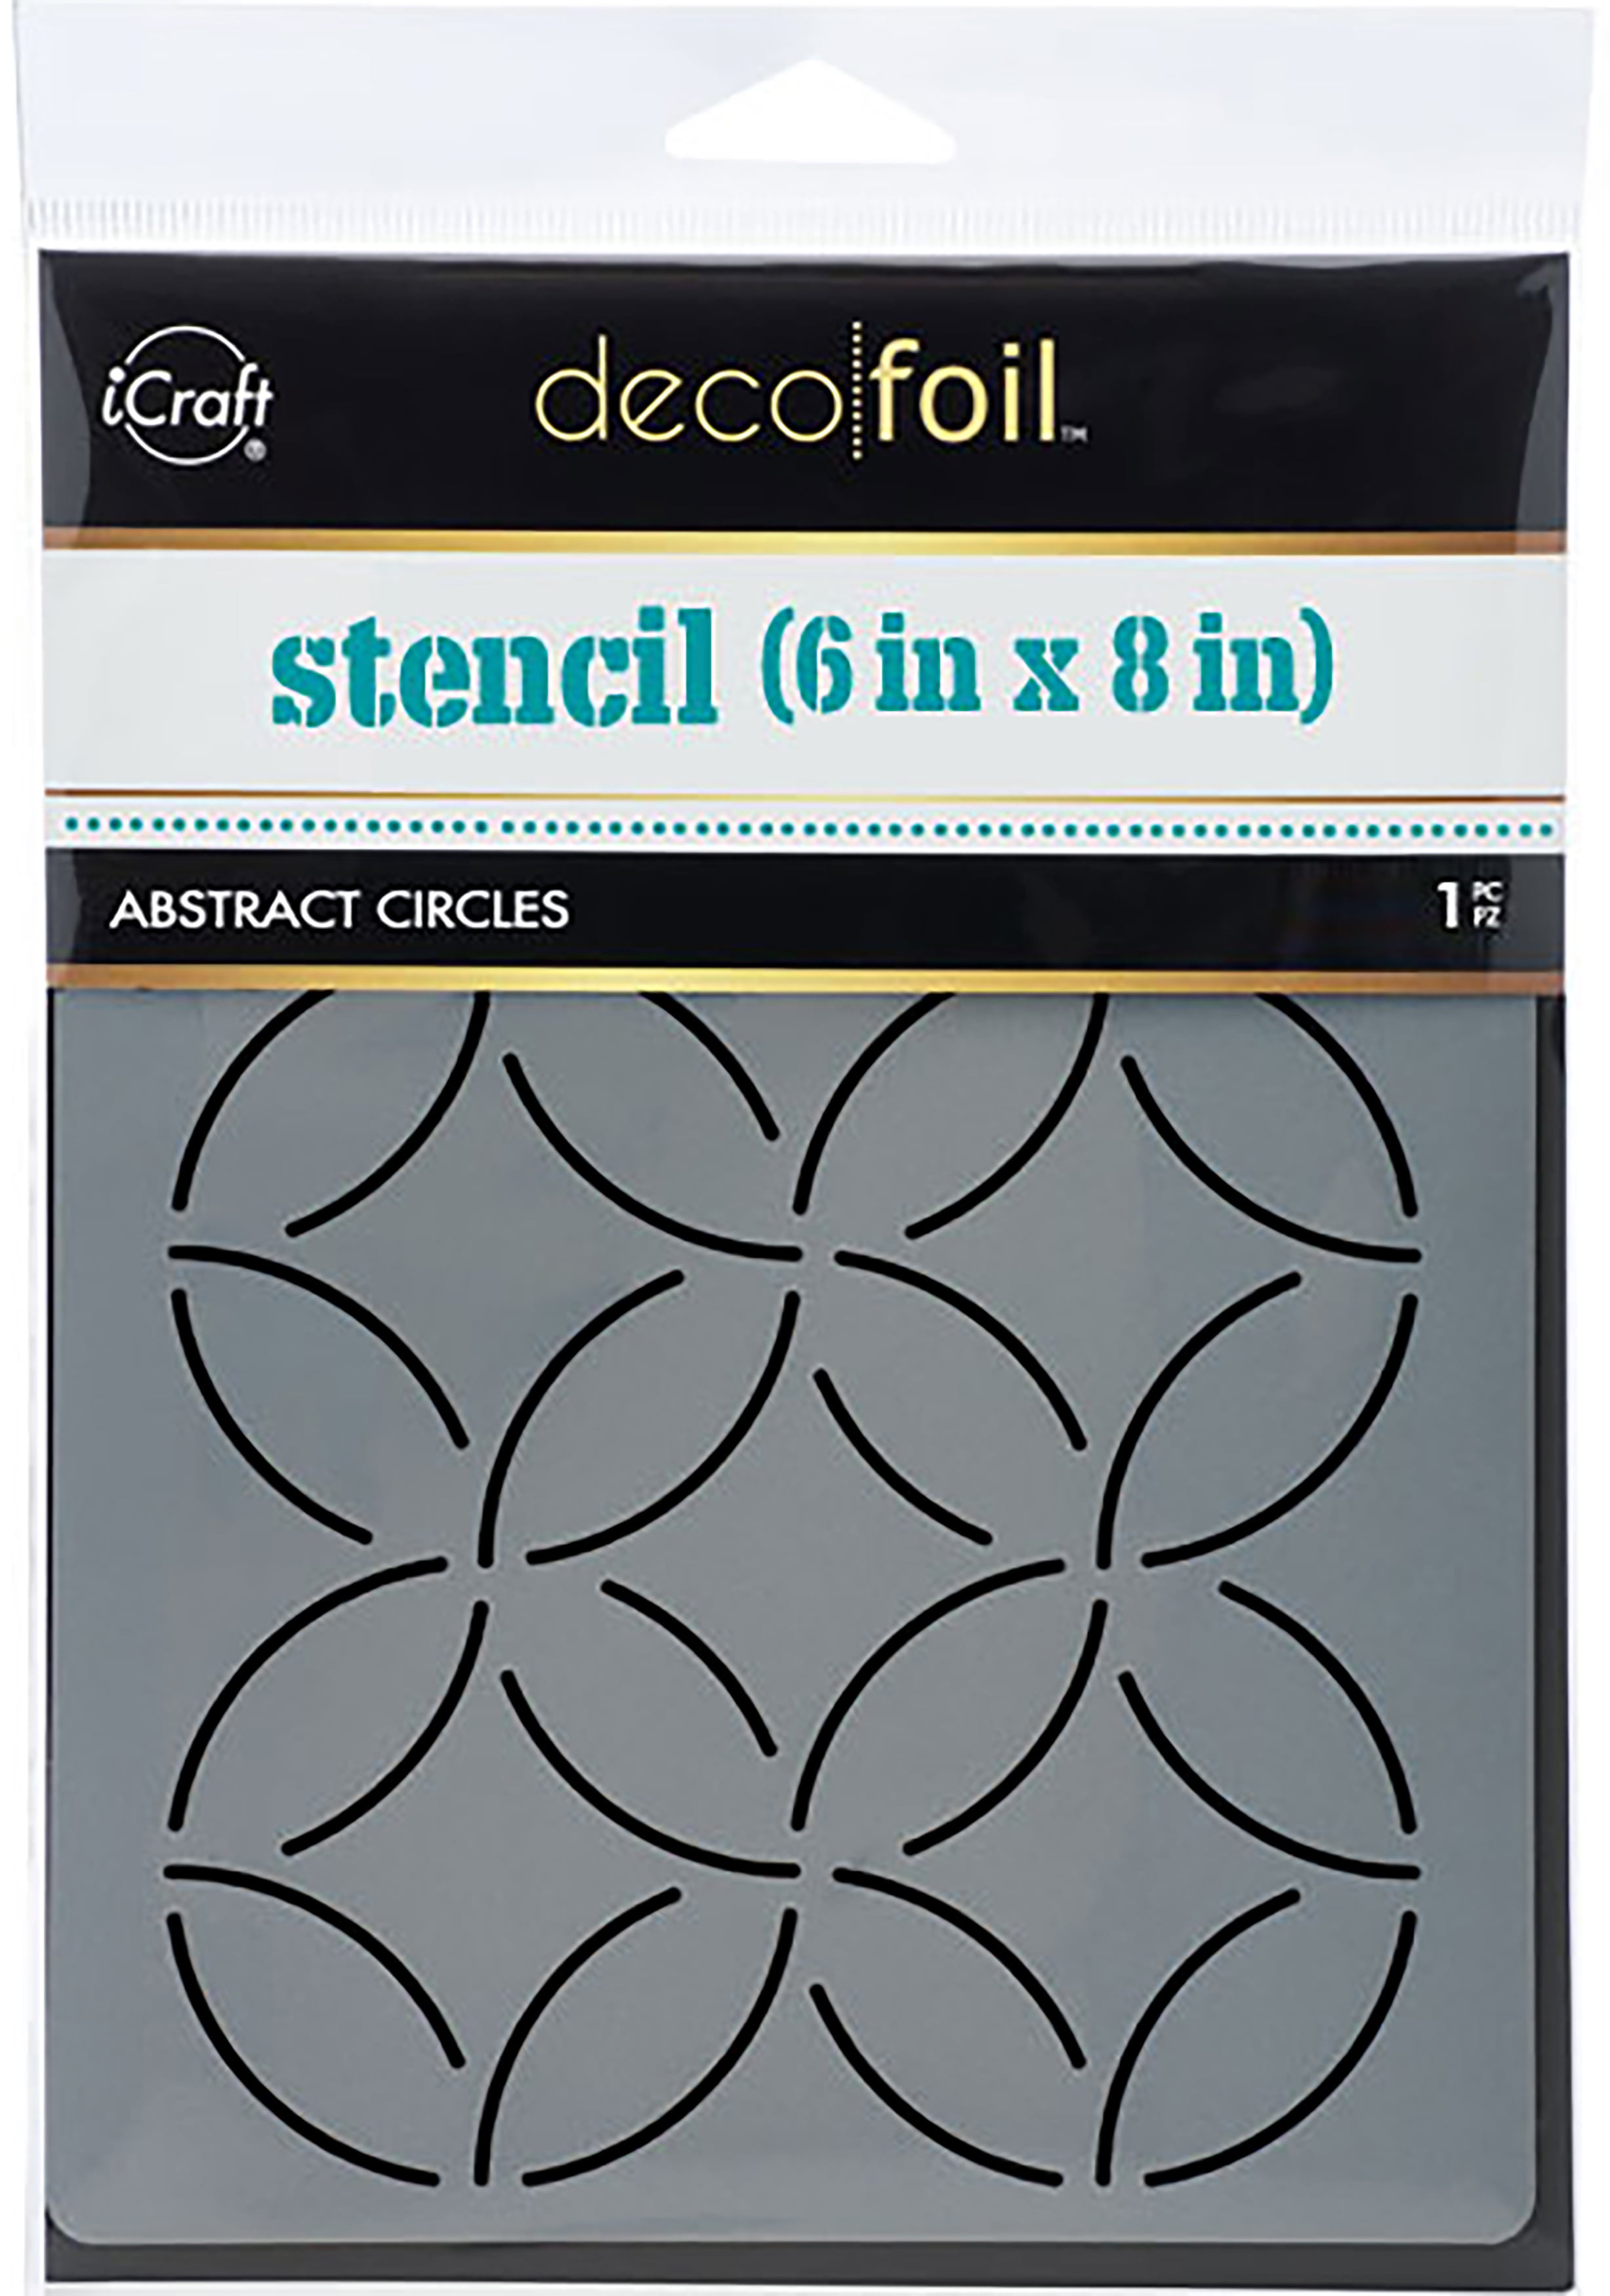 iCraft Deco Foil Hello Stencil 